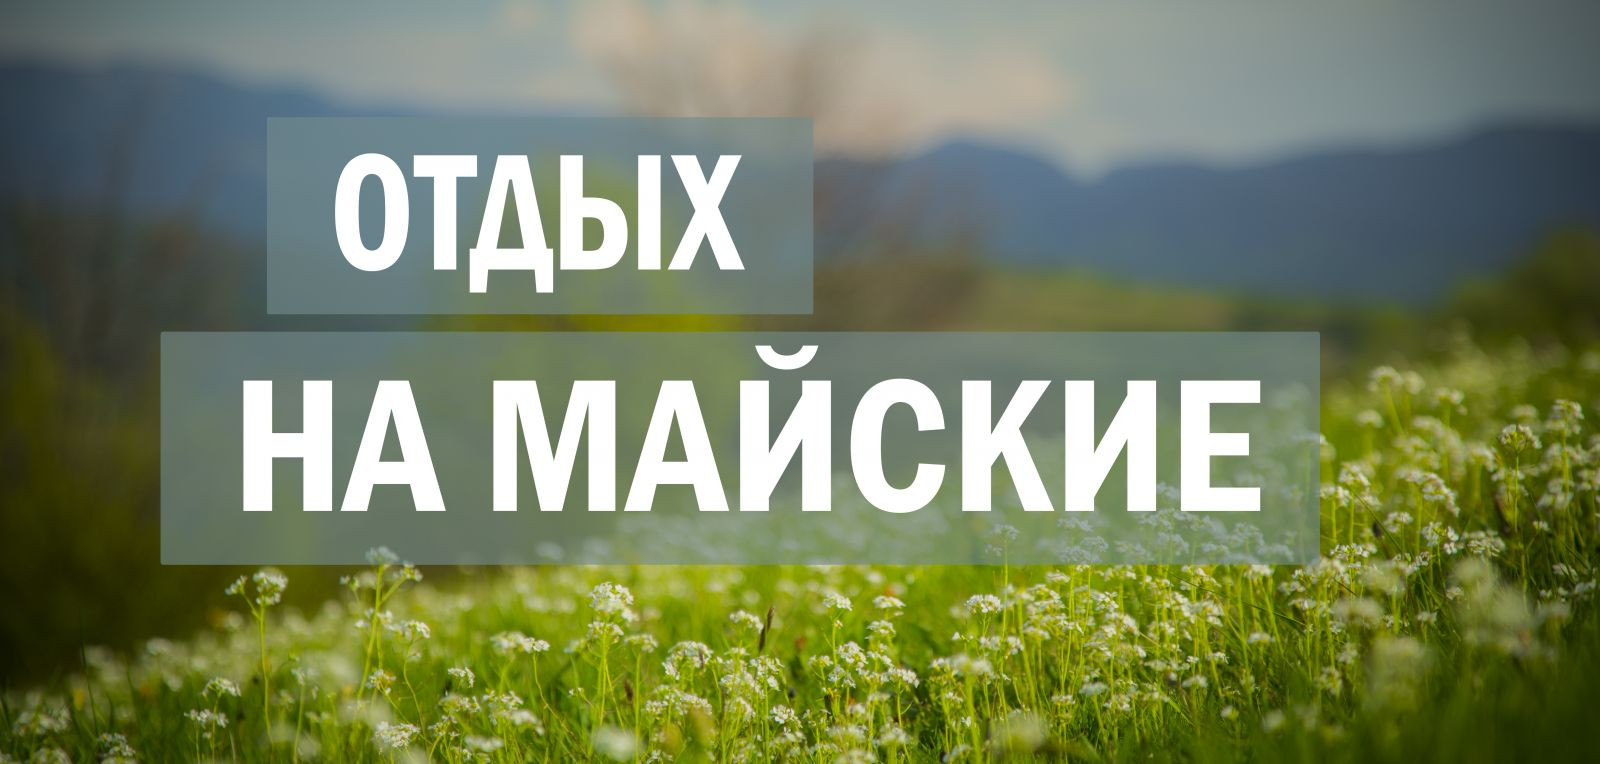 Правительство России обнародовало расписание выходных на майские праздники в 2019 году